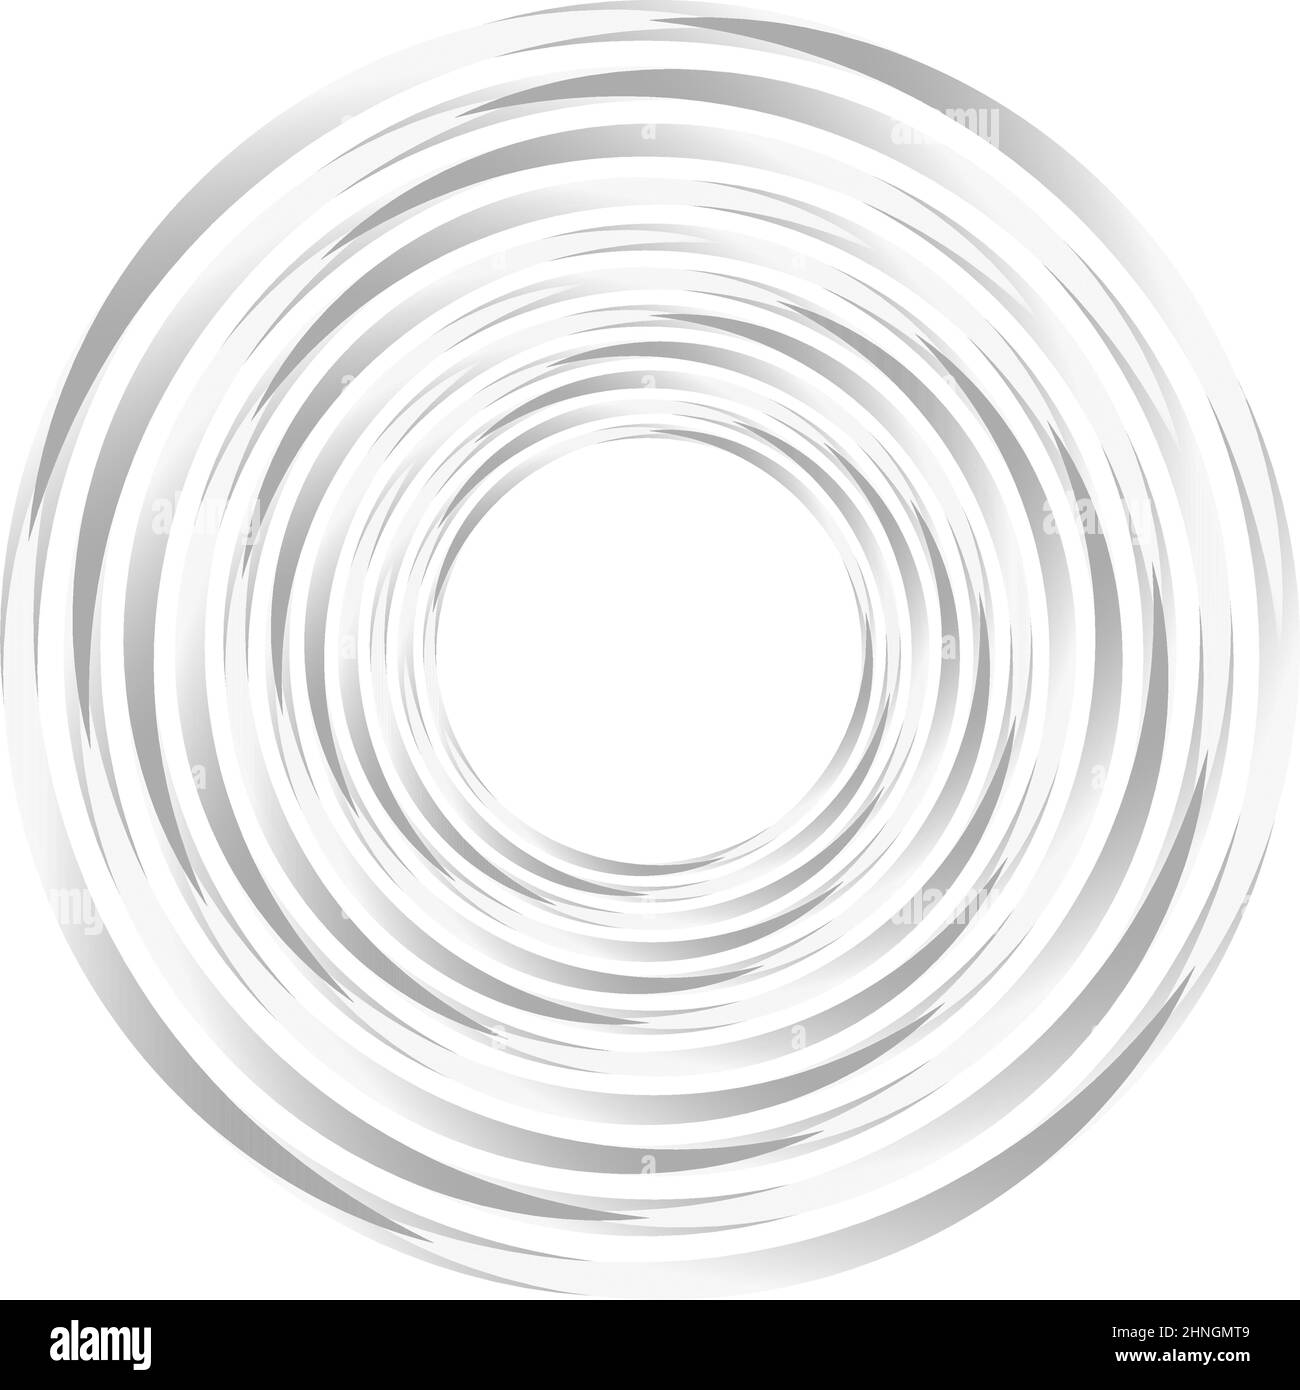 Cercle géométrique abstrait, élément de conception d'anneau. Cercle circulaire concentrique. Tourbillon, tourbillon, forme de spirale et de vortex, icône, symbole - vecteur de stock illus Illustration de Vecteur